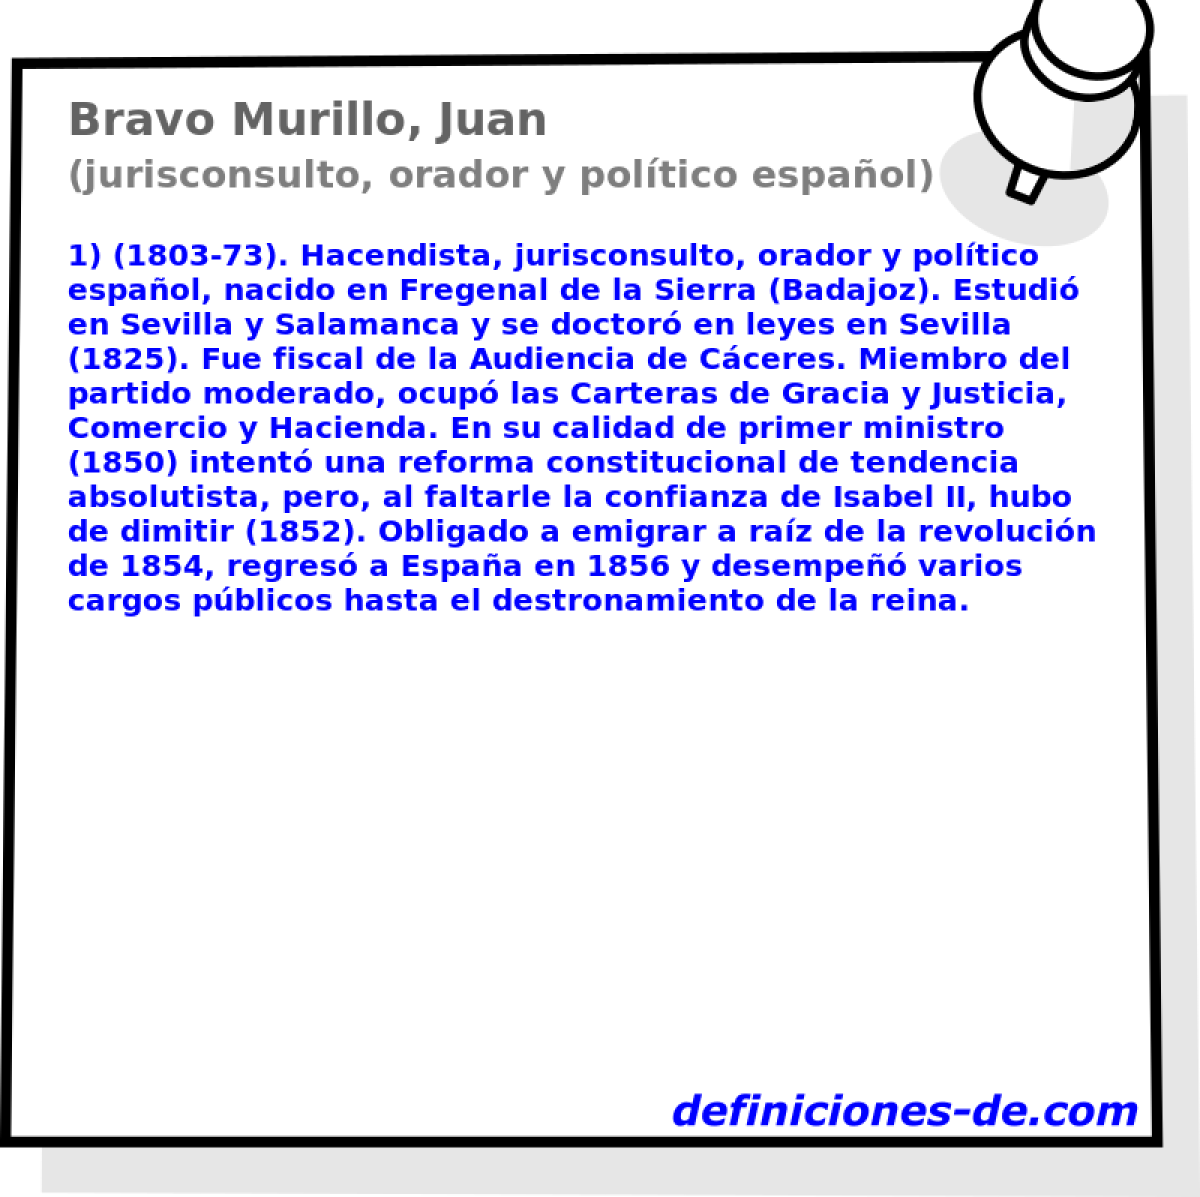 Bravo Murillo, Juan (jurisconsulto, orador y poltico espaol)